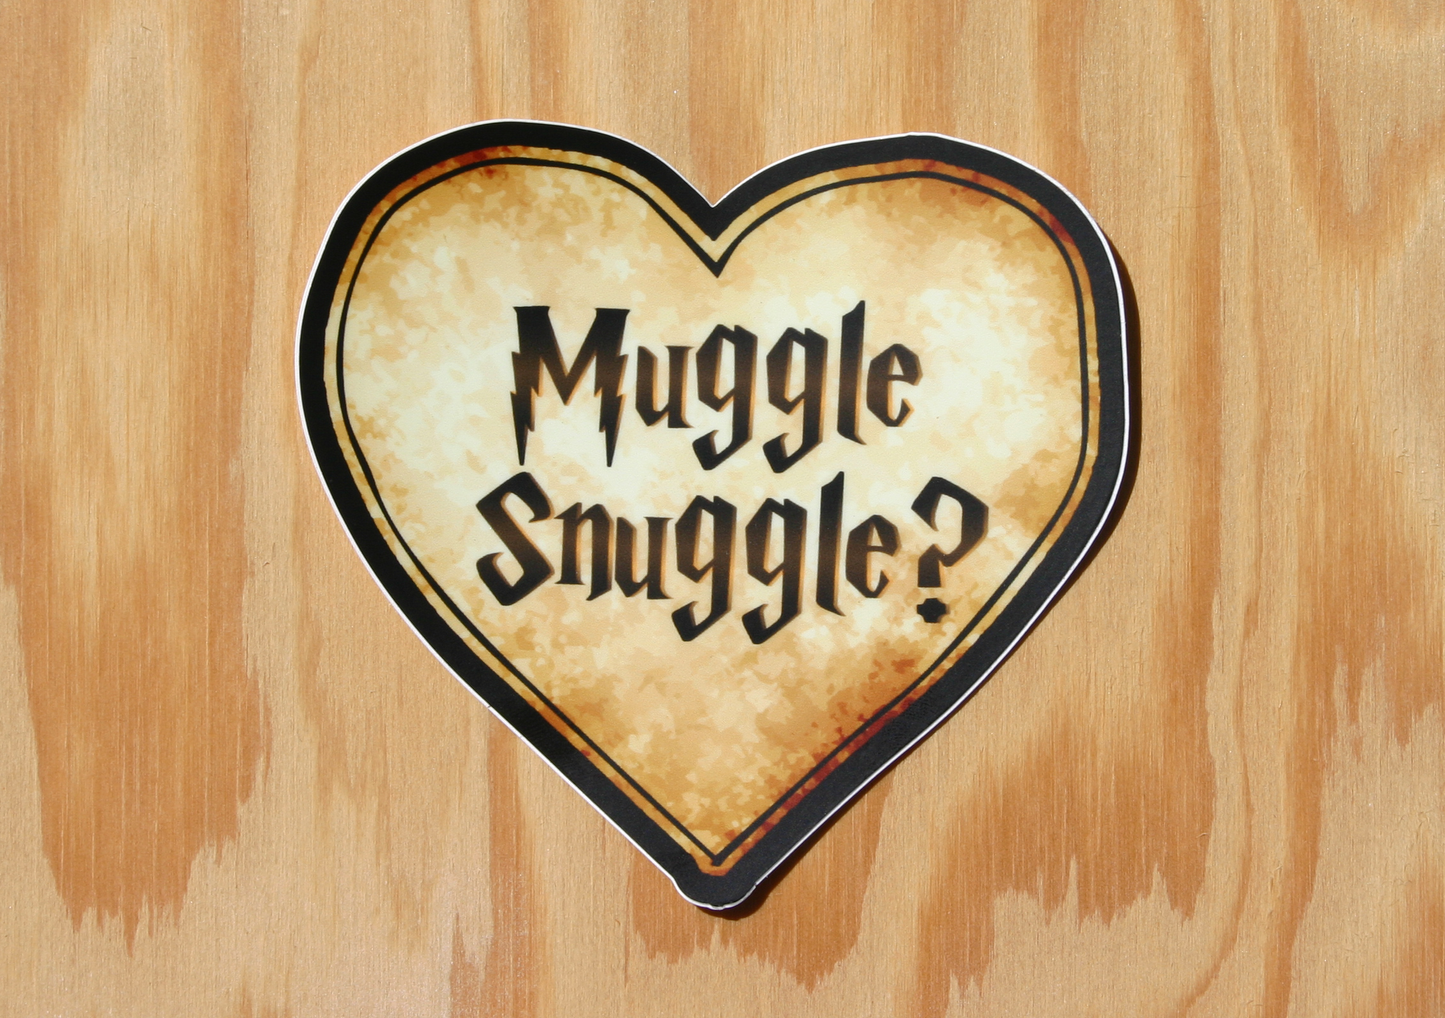 Muggle Snuggle